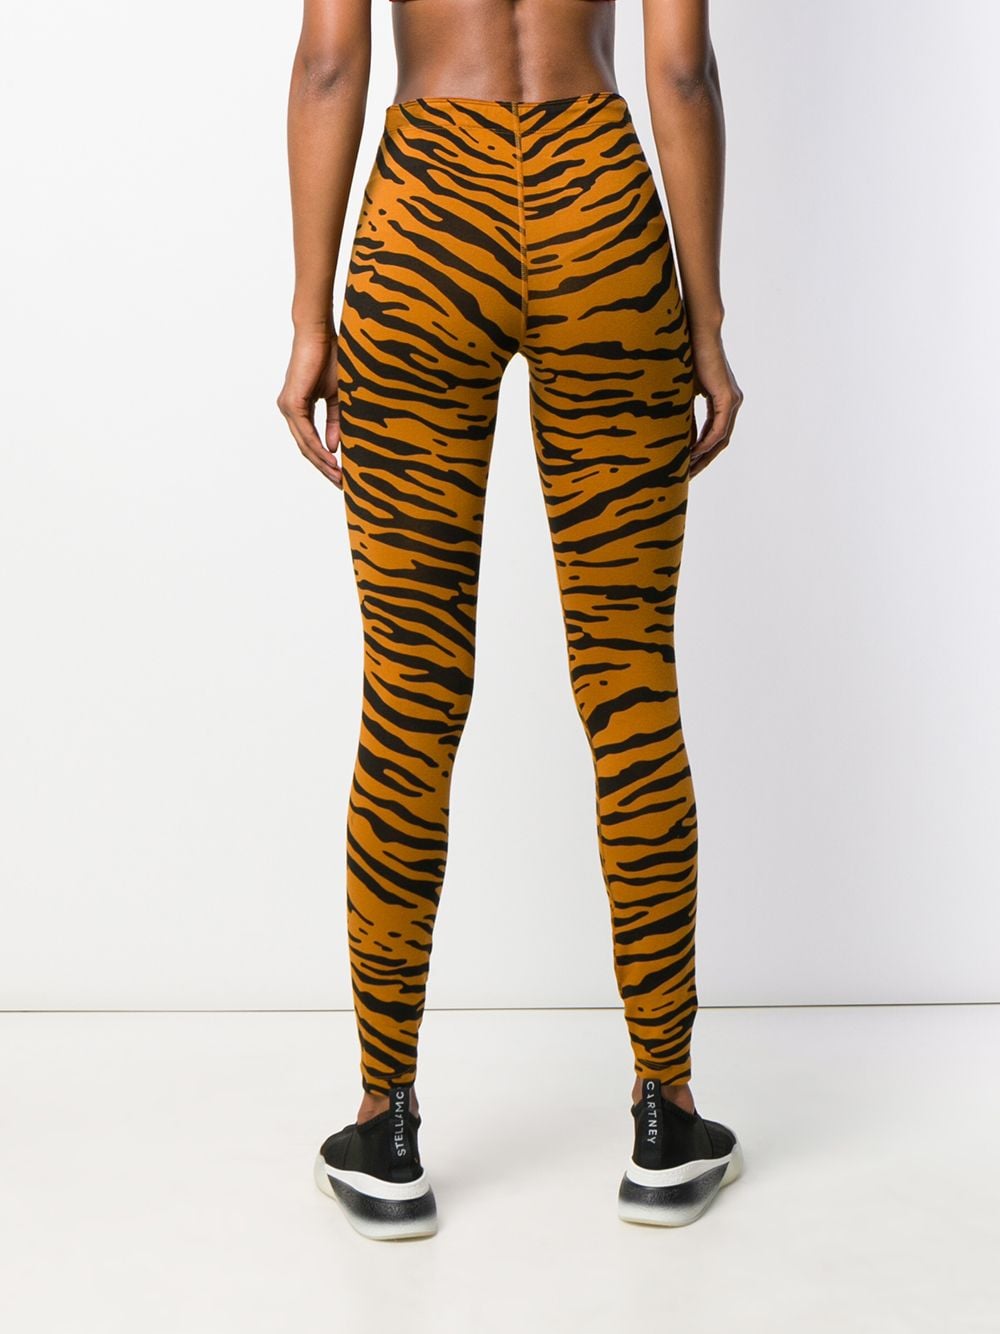 nike tiger print leggings